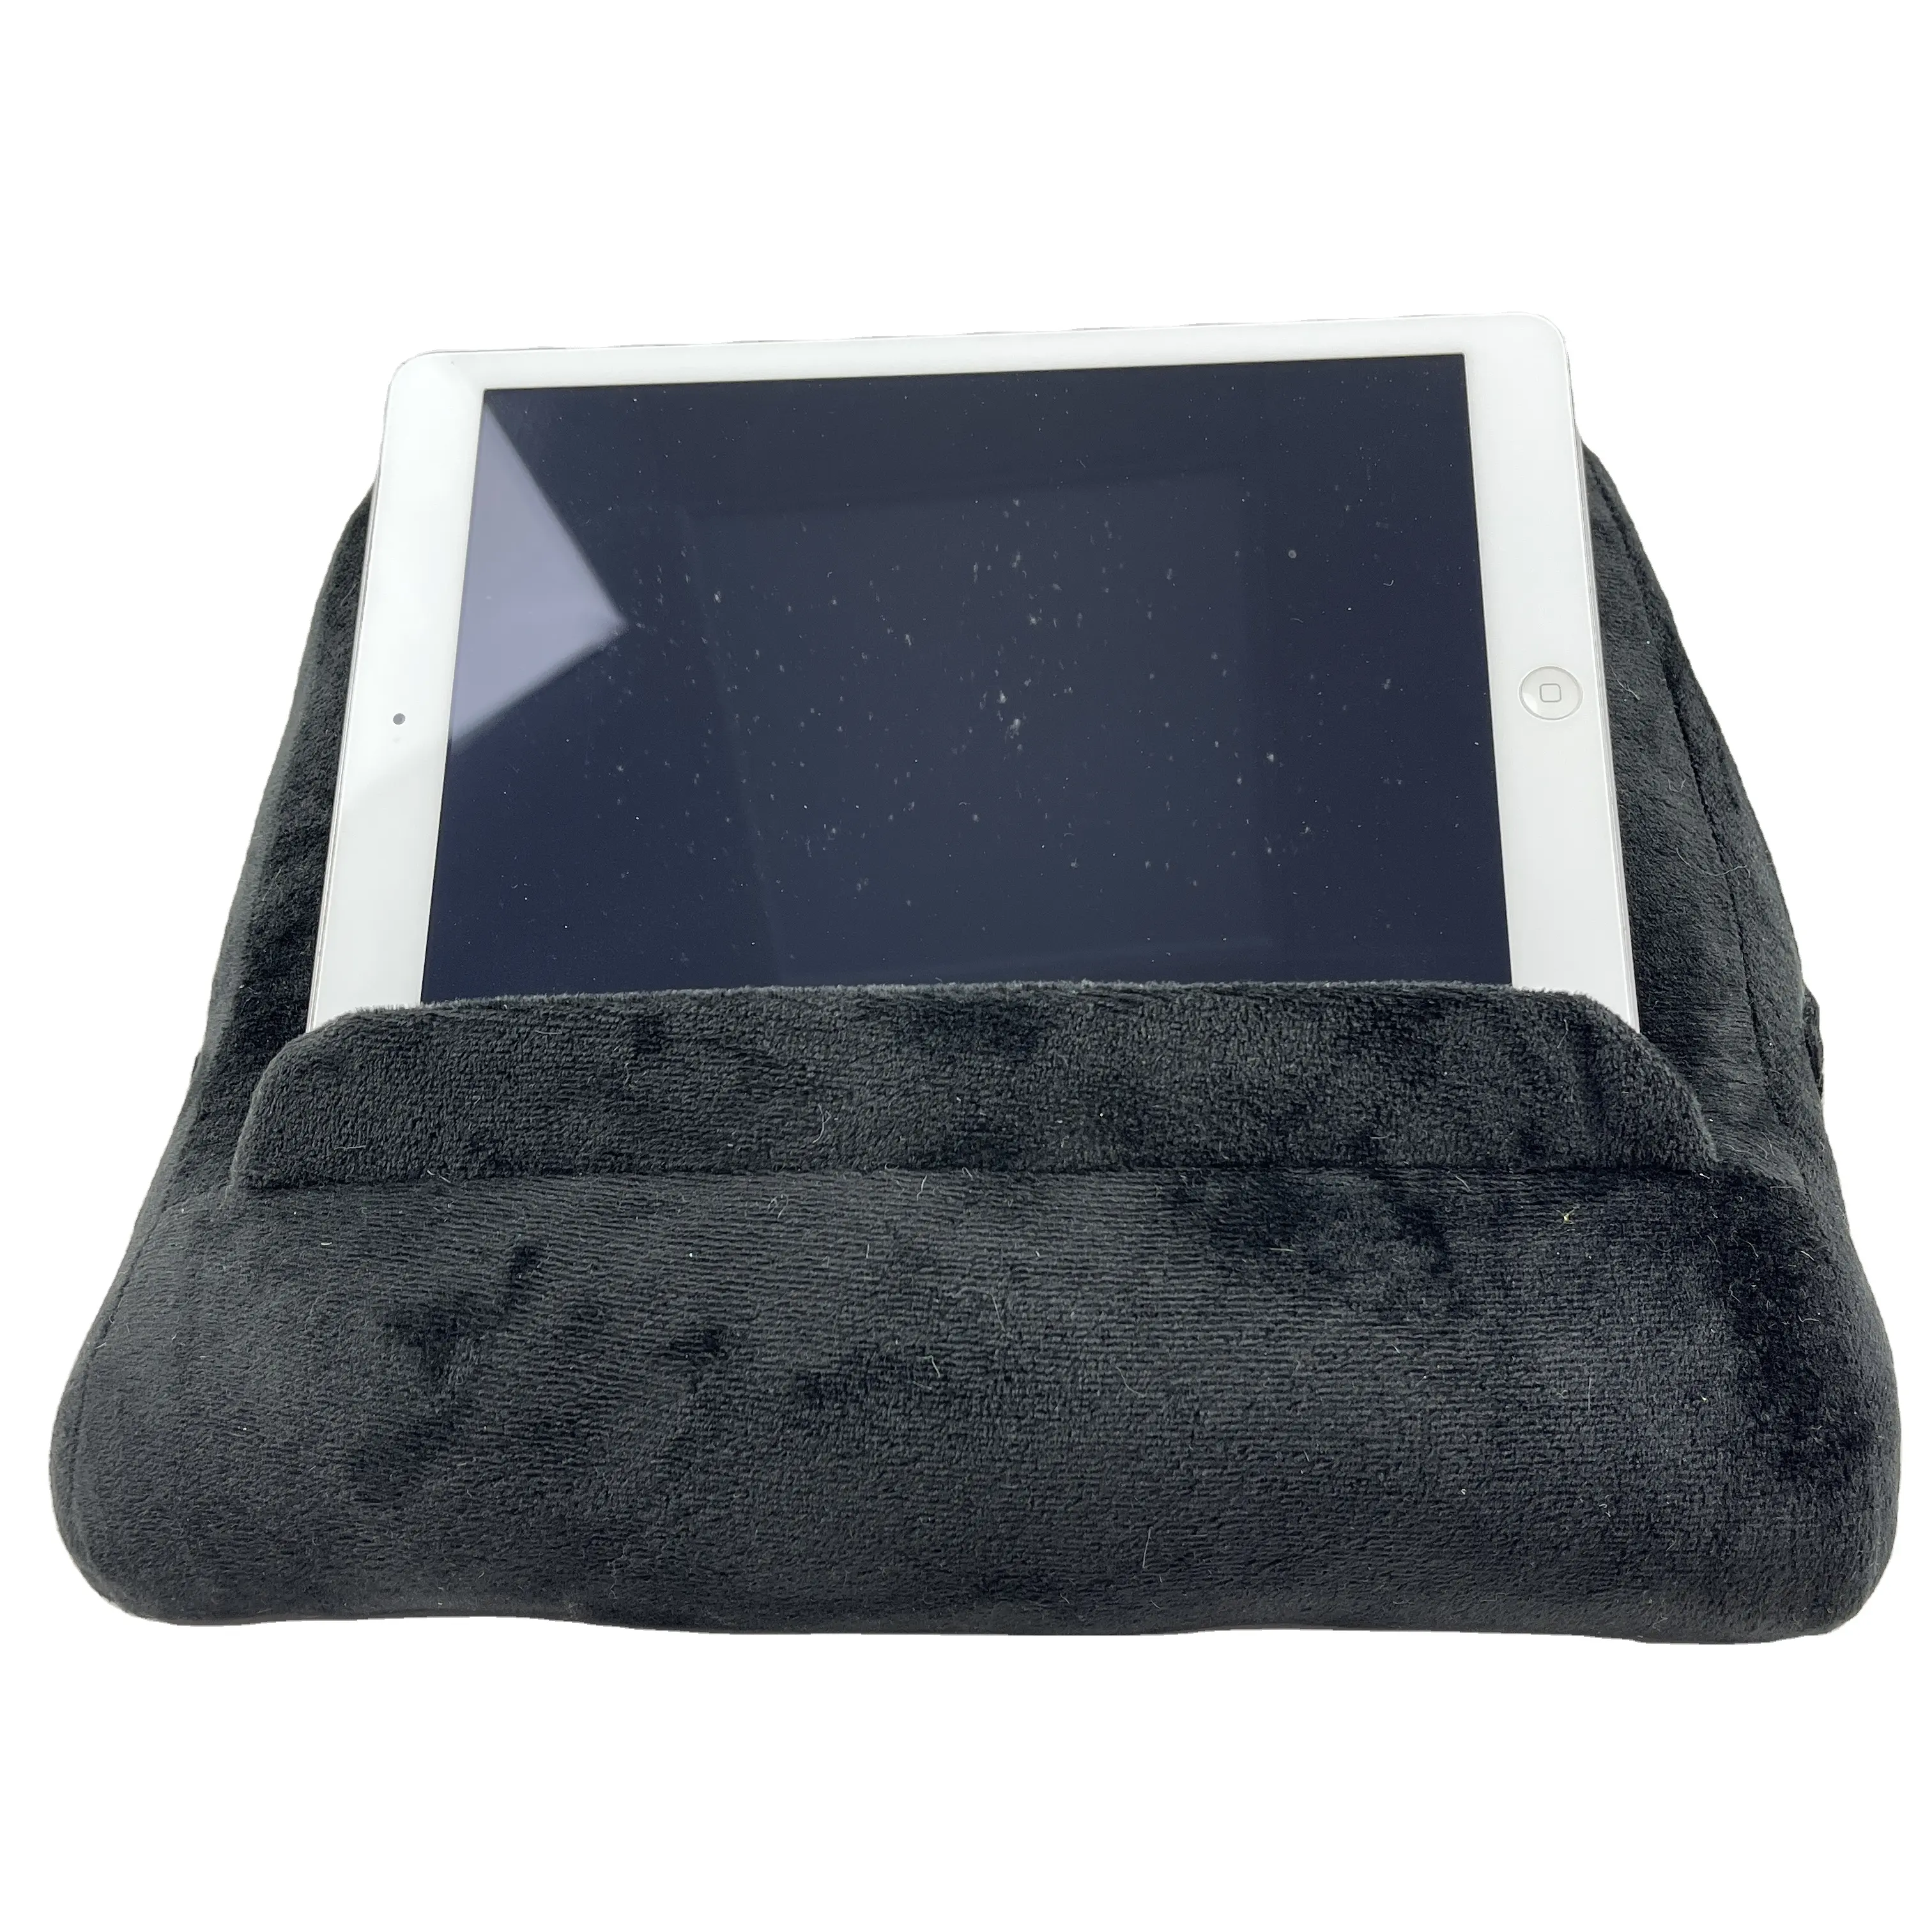 Sıcak satış okuma yastığı el ücretsiz telefonlar Tablet Lap yastık standı için yastık tutucu